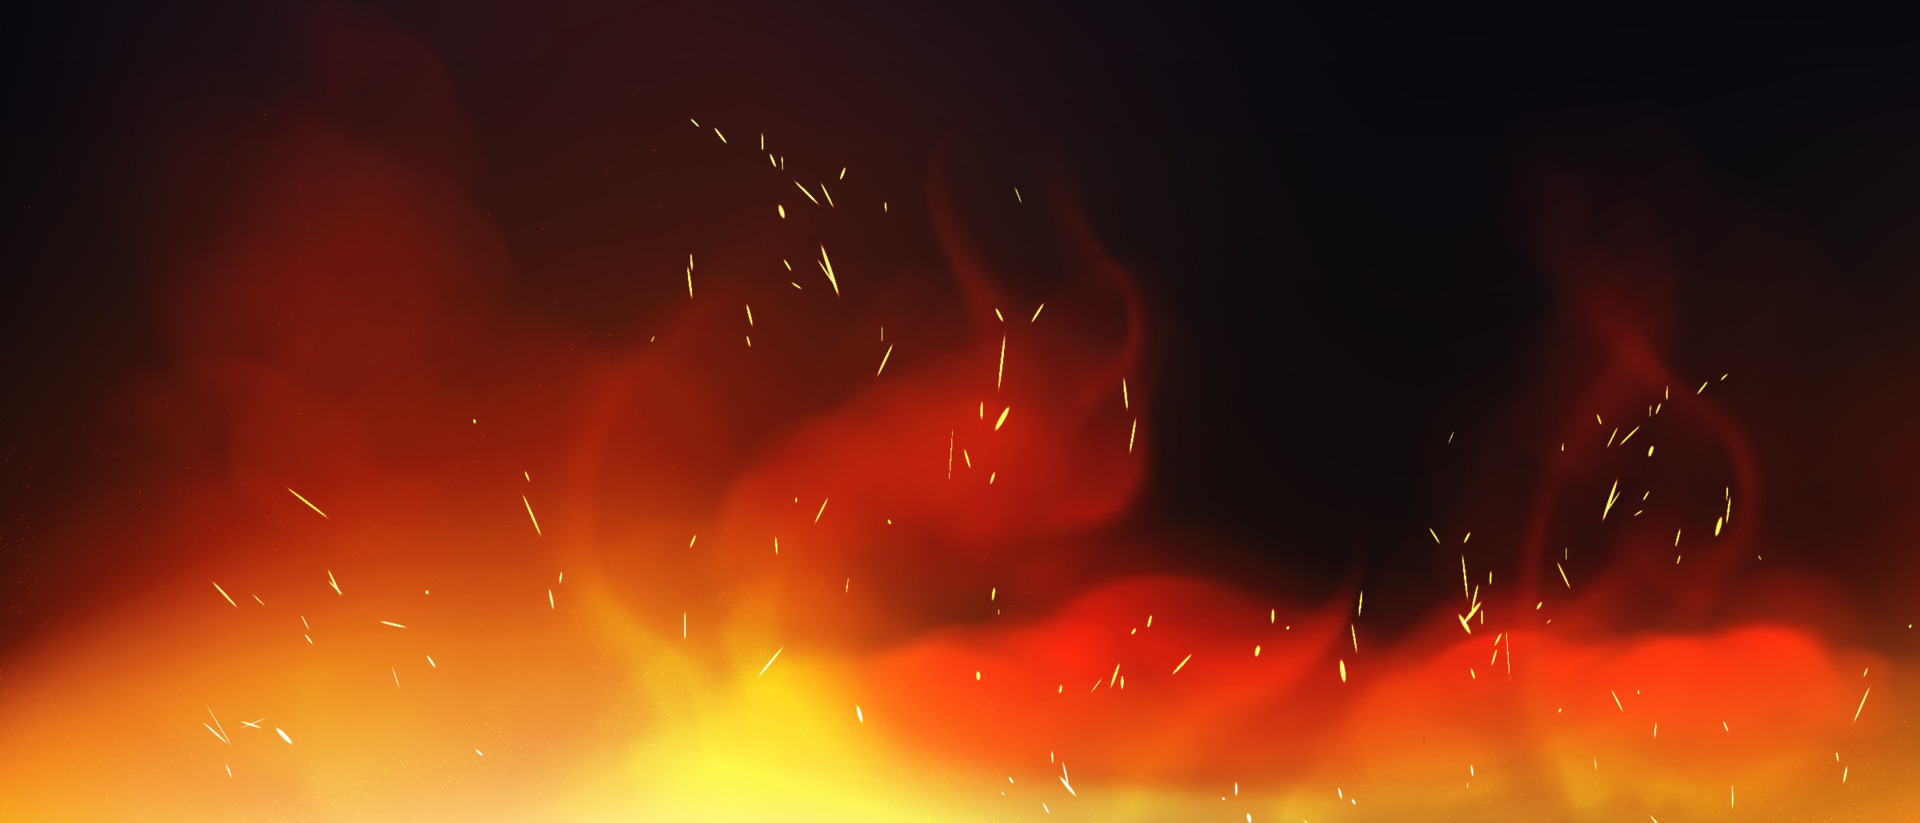 Vector hoa lửa là một sự lựa chọn tuyệt vời để mang đến cho bức ảnh của bạn một chút cháy bỏng và nhiệt huyết. Với những đường nét mềm mại và đầy màu sắc, những hình ảnh vector này chắc chắn sẽ làm cho bức ảnh của bạn nổi bật và đặc biệt hơn. Hãy trải nghiệm và chiêm ngưỡng những vector hoa lửa đầy cuốn hút và sức mạnh.